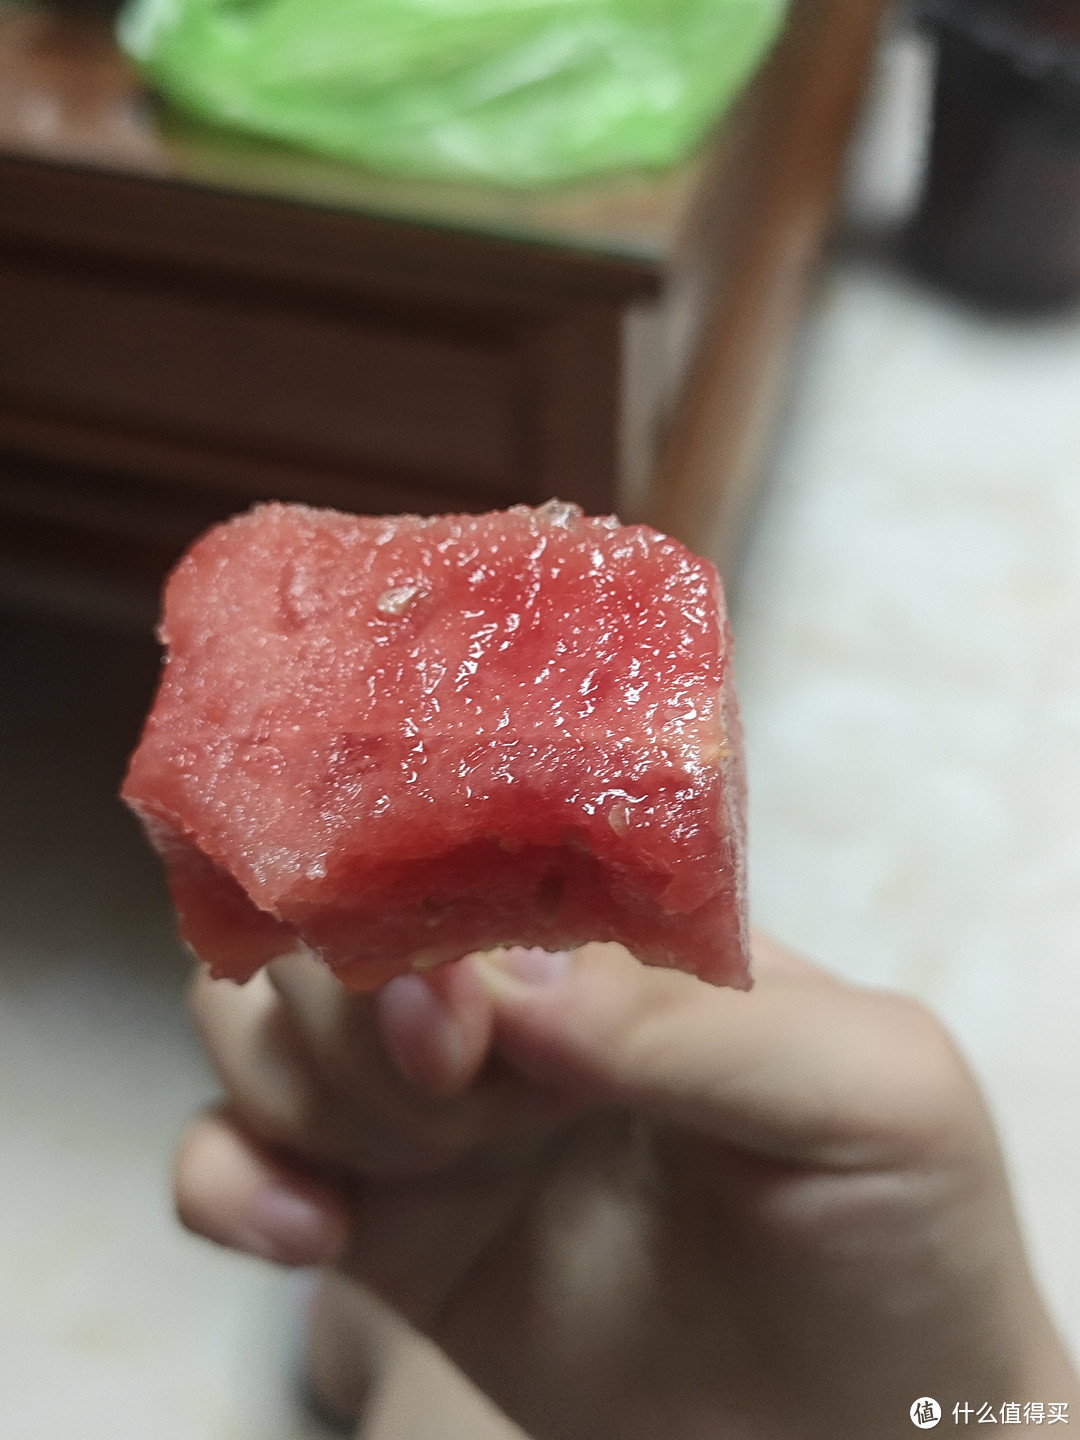 夏天吃的必不可少的水果就是西瓜